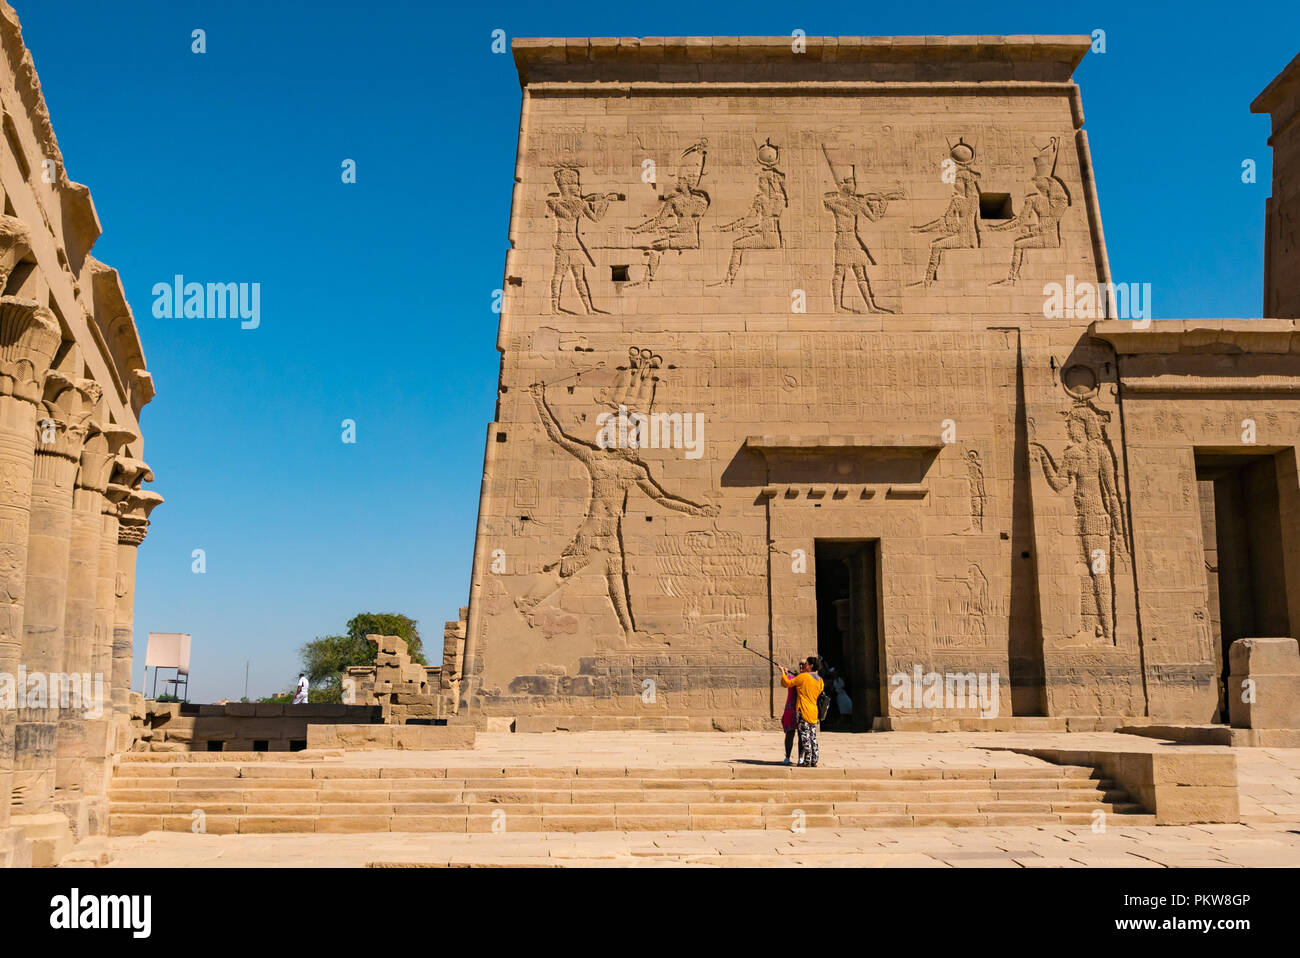 Zwei Frauen Touristen unter selfie mit selfie Stick am äußeren Pylon, Tempel von Philae, der Nil, Assuan, Ägypten, Afrika Stockfoto